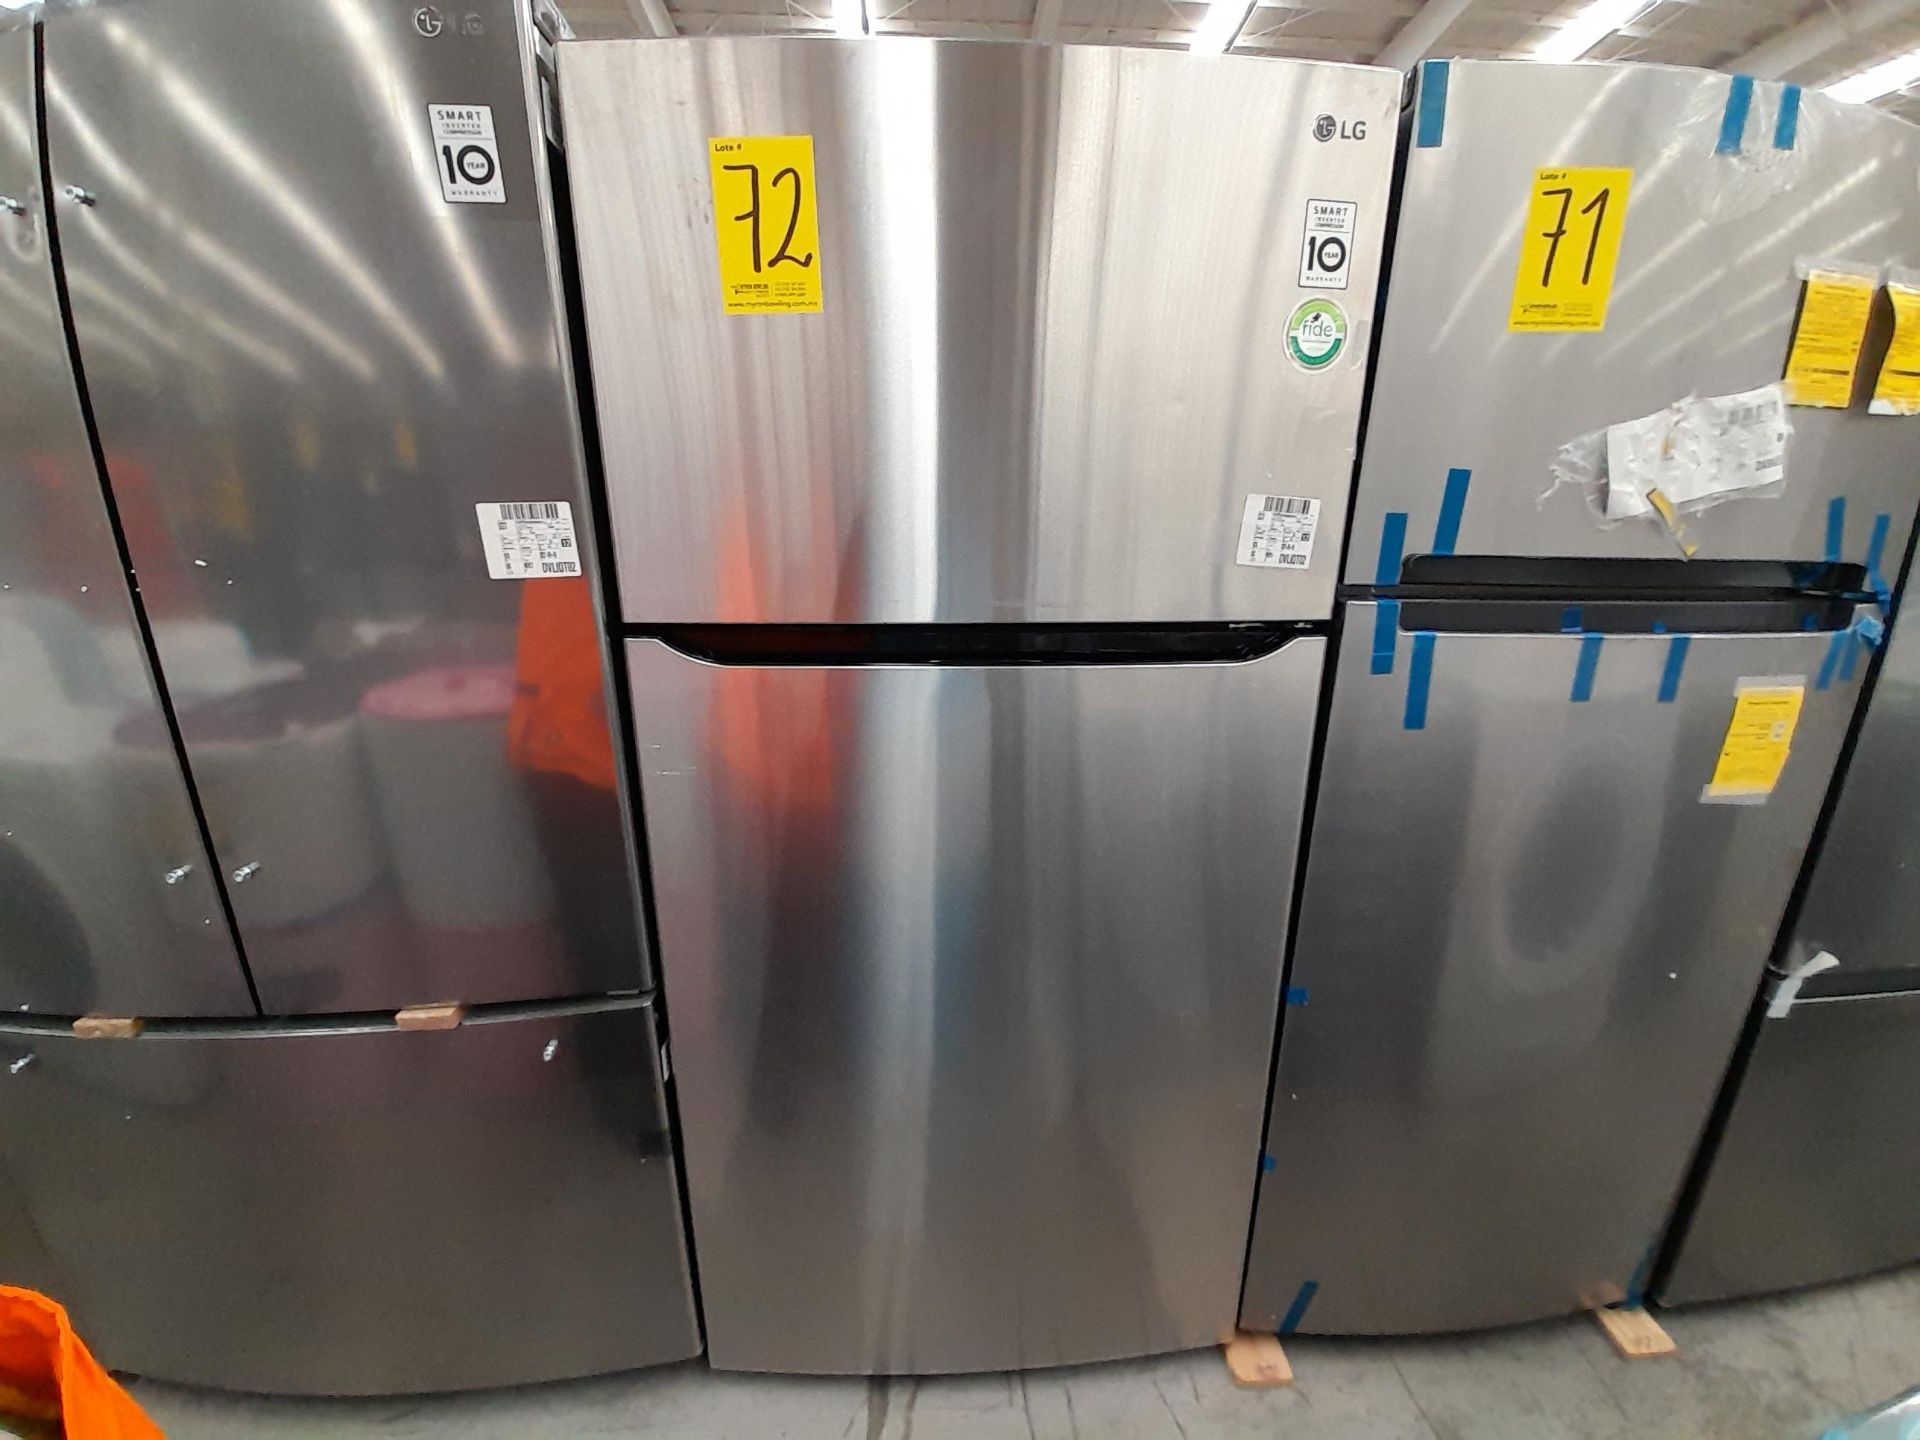 (Equipo nuevo) 1 Refrigerador Marca LG, Modelo GT24BS, Serie A2E194, Color GRIS. (Nuevo, excelente